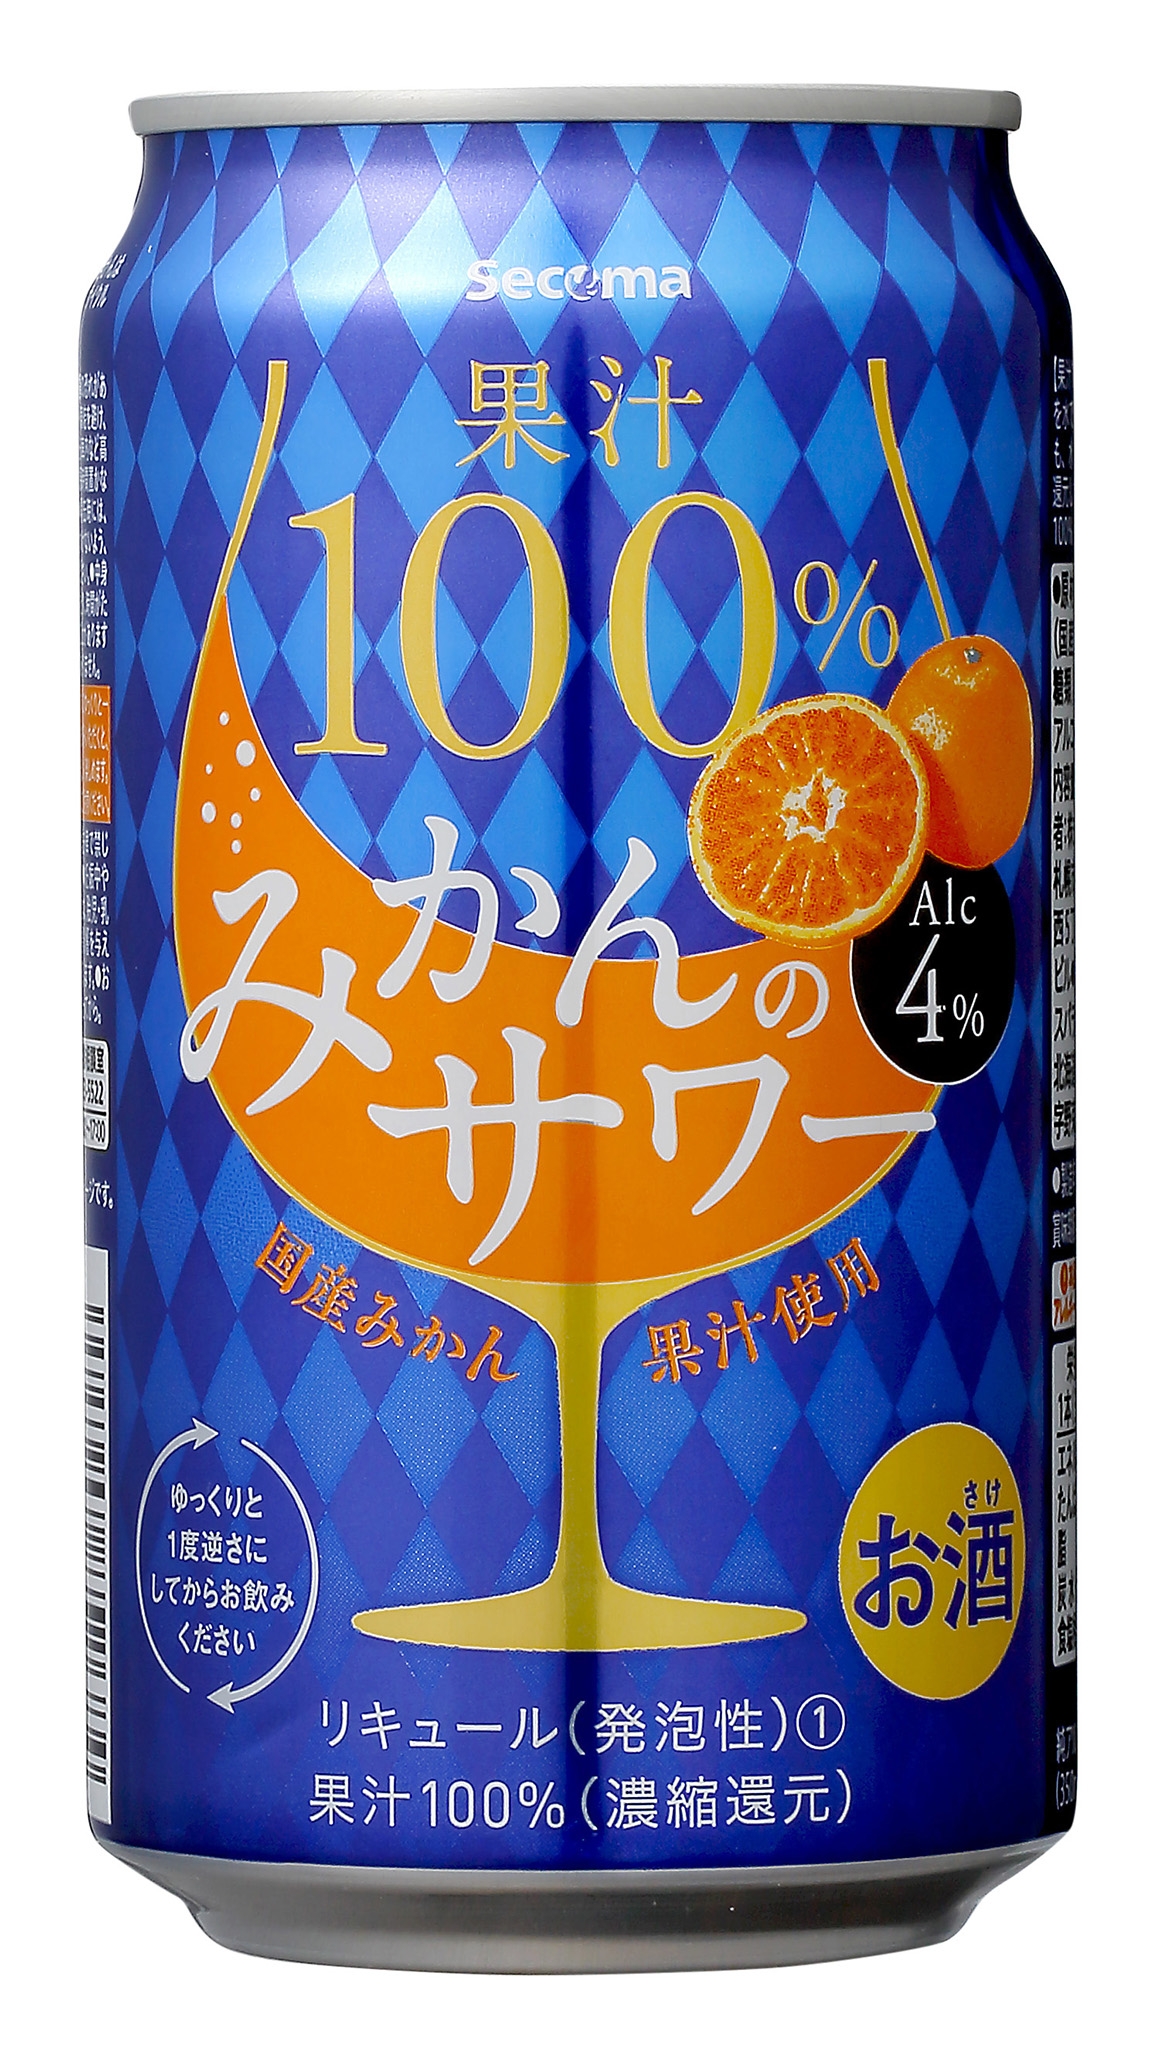 Secoma 果汁100%みかんのサワー 350ml 24本入 - セイコーマート公式通販